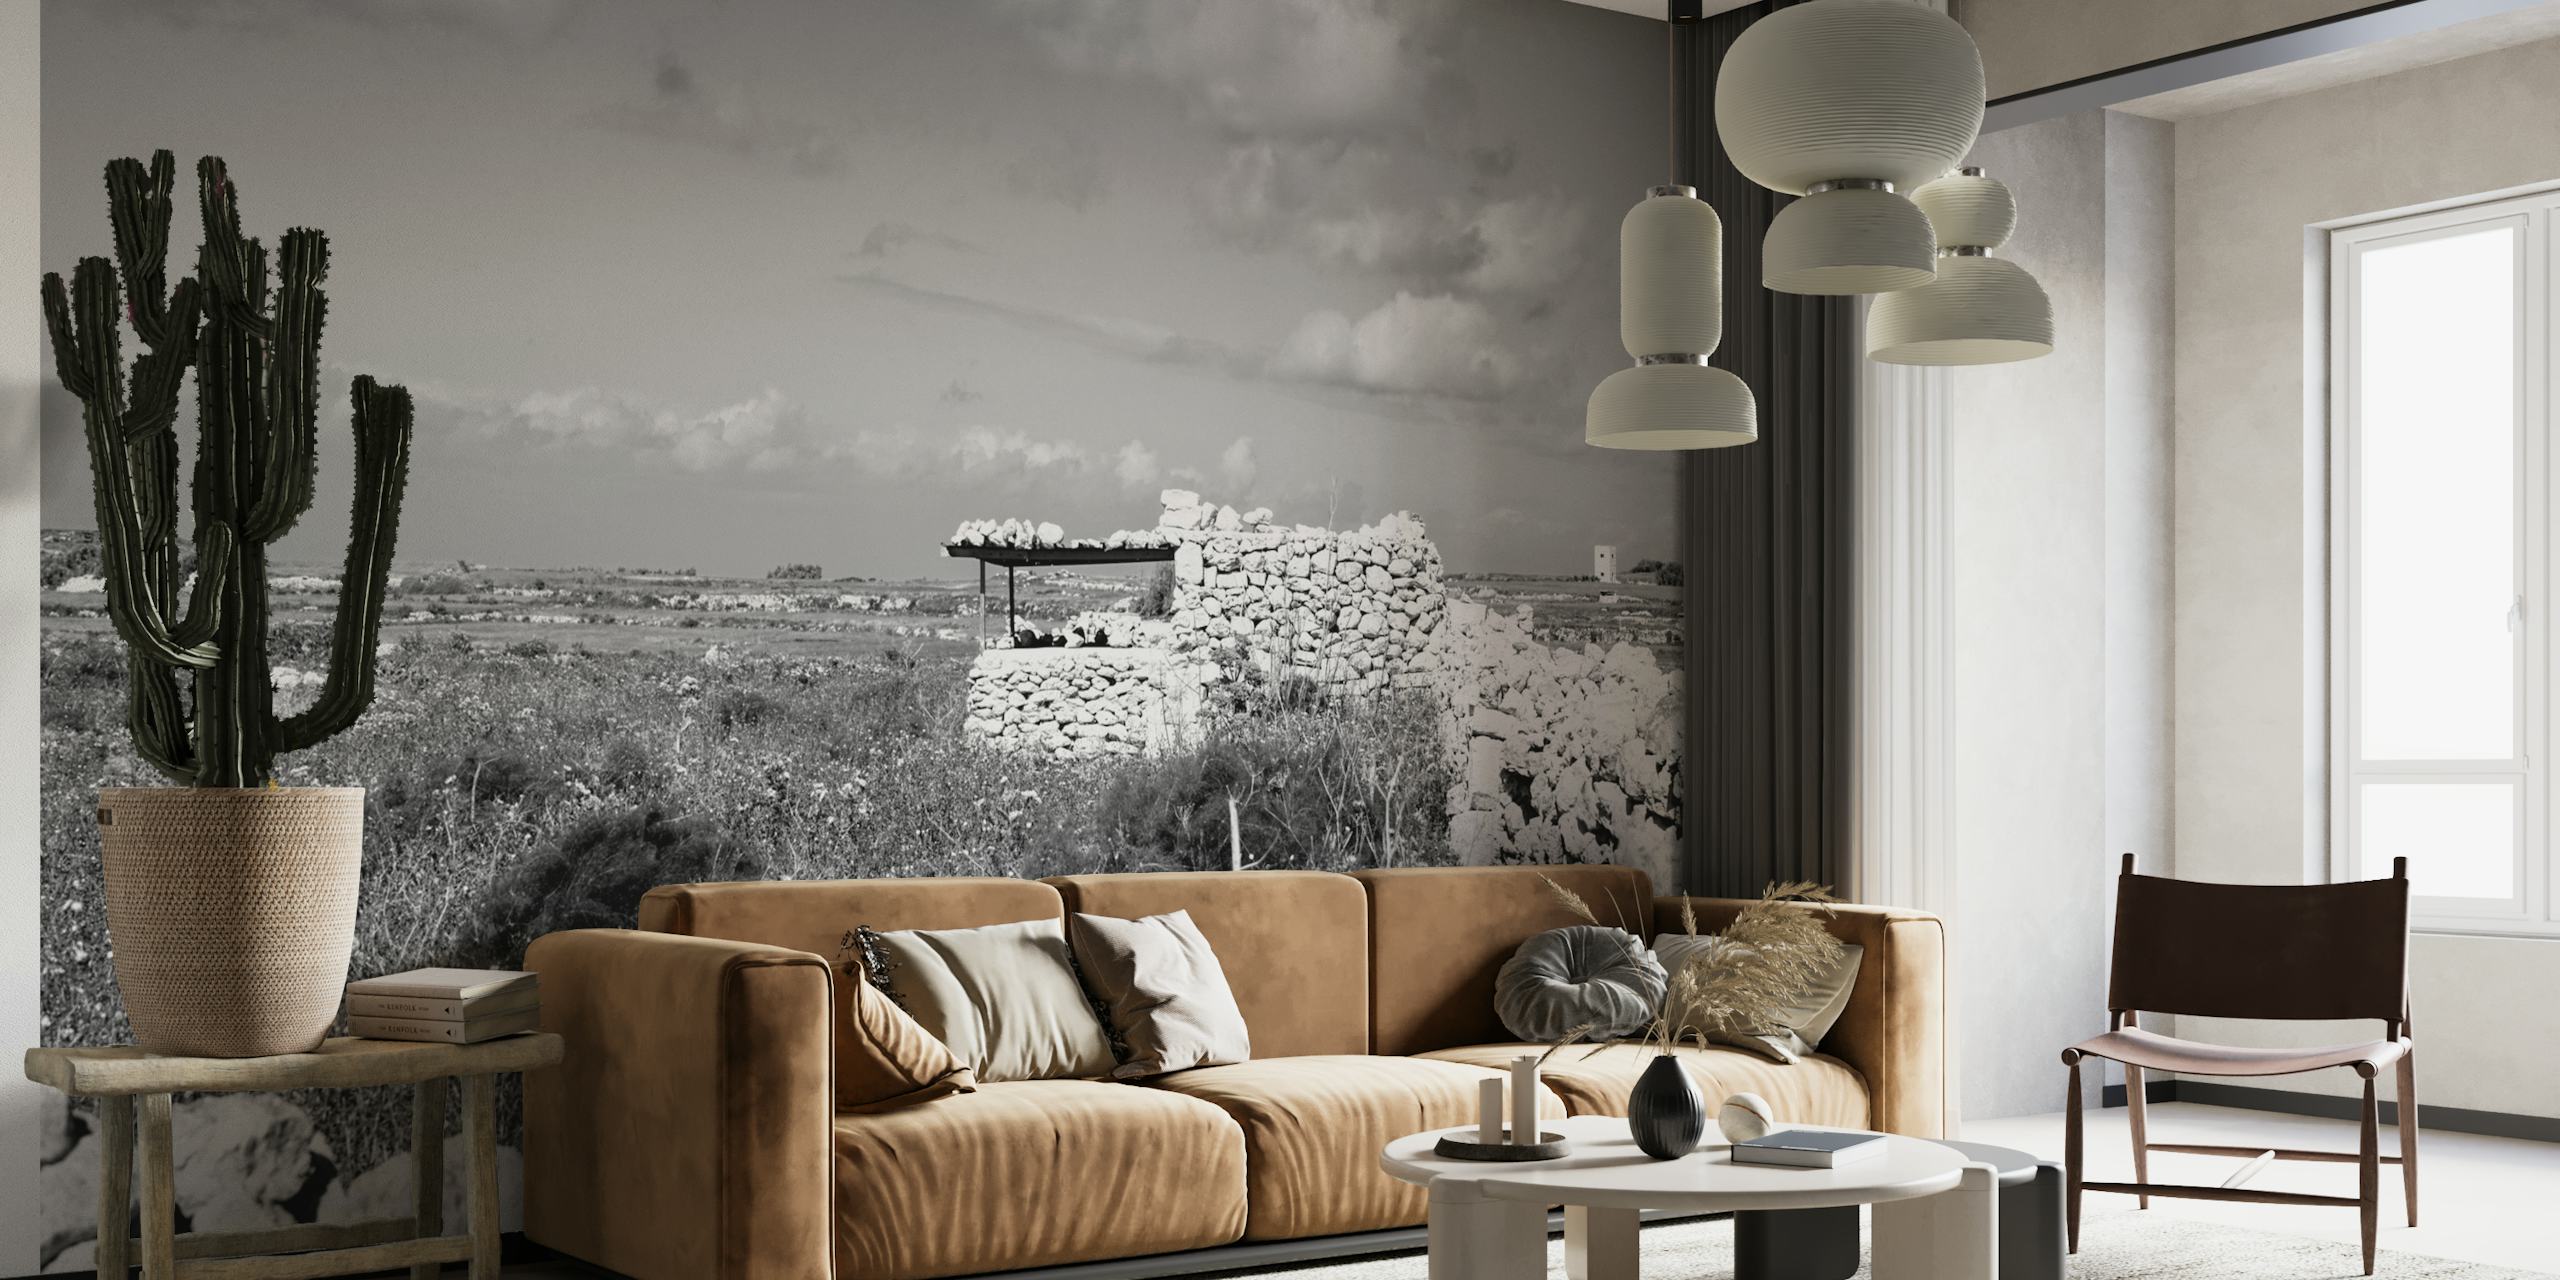 Mural de parede preto e branco de uma casa pequena e isolada em meio a uma paisagem natural